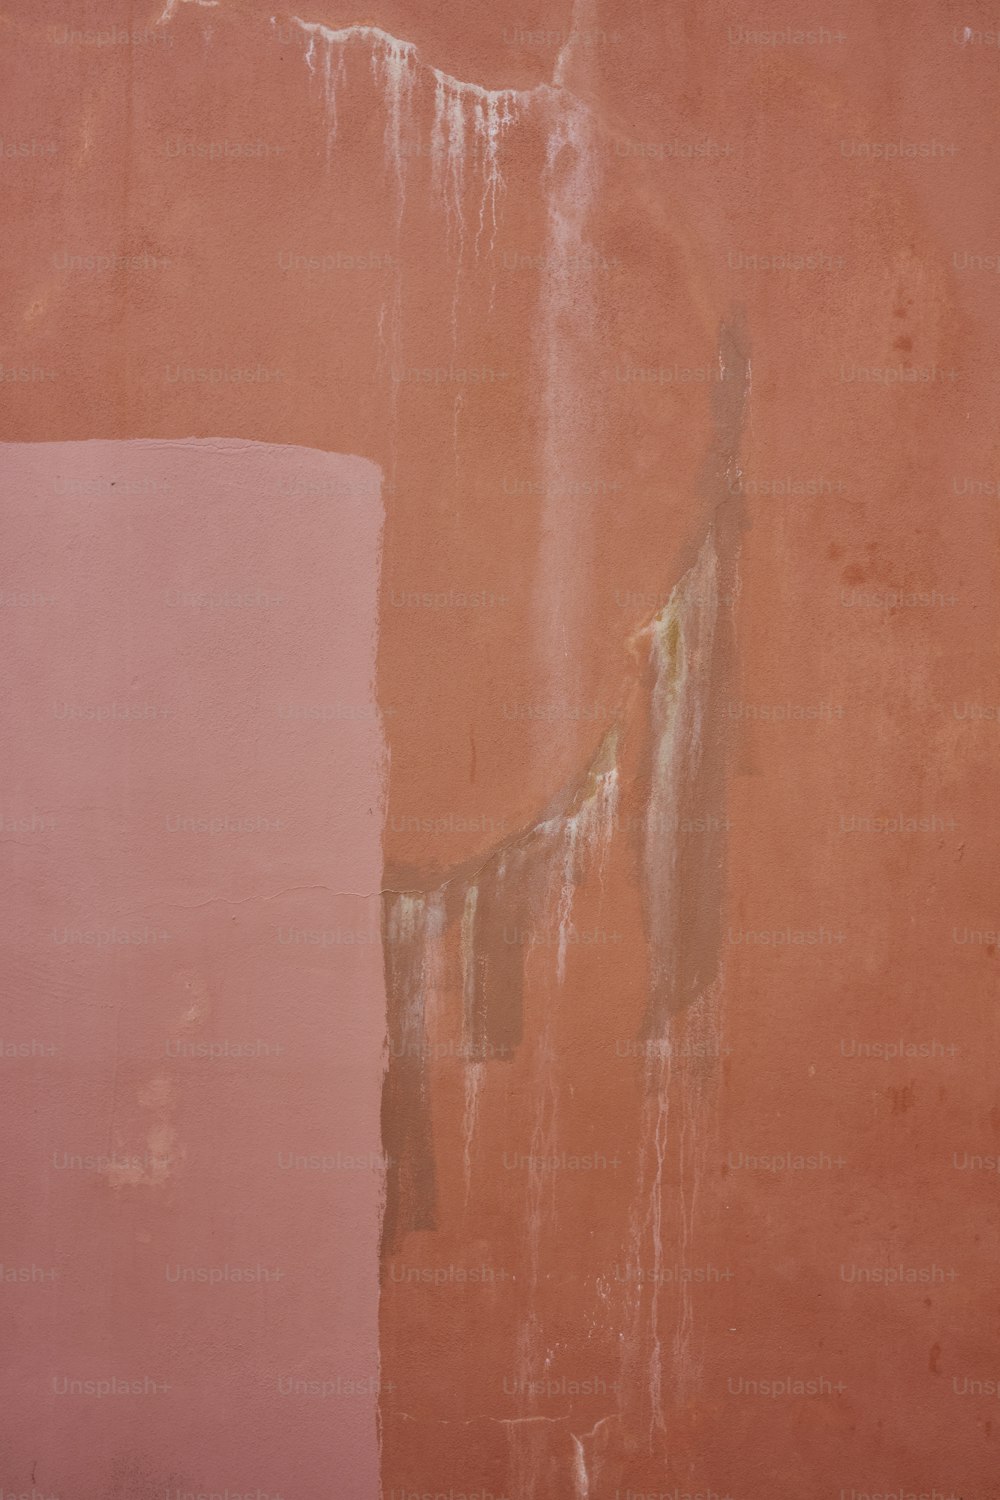 eine rosafarbene Wand mit abblätternder Farbe darauf